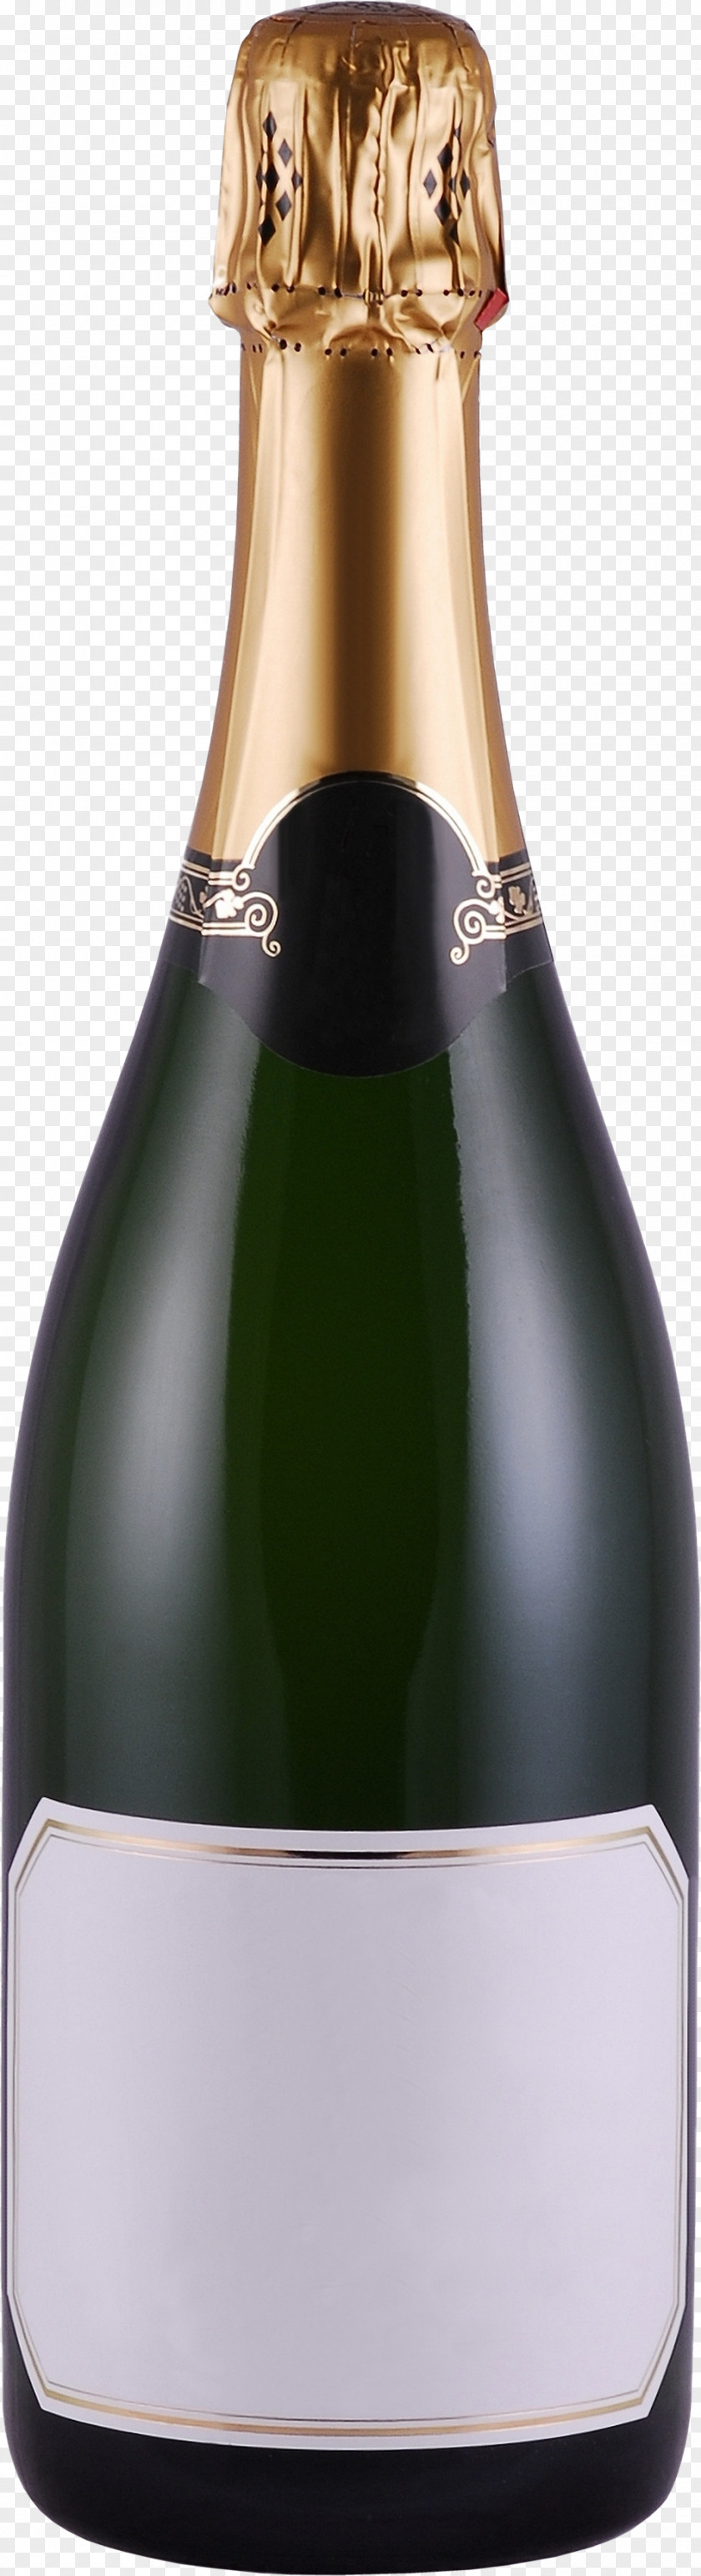 Champagne Bottle Moët & Chandon PNG